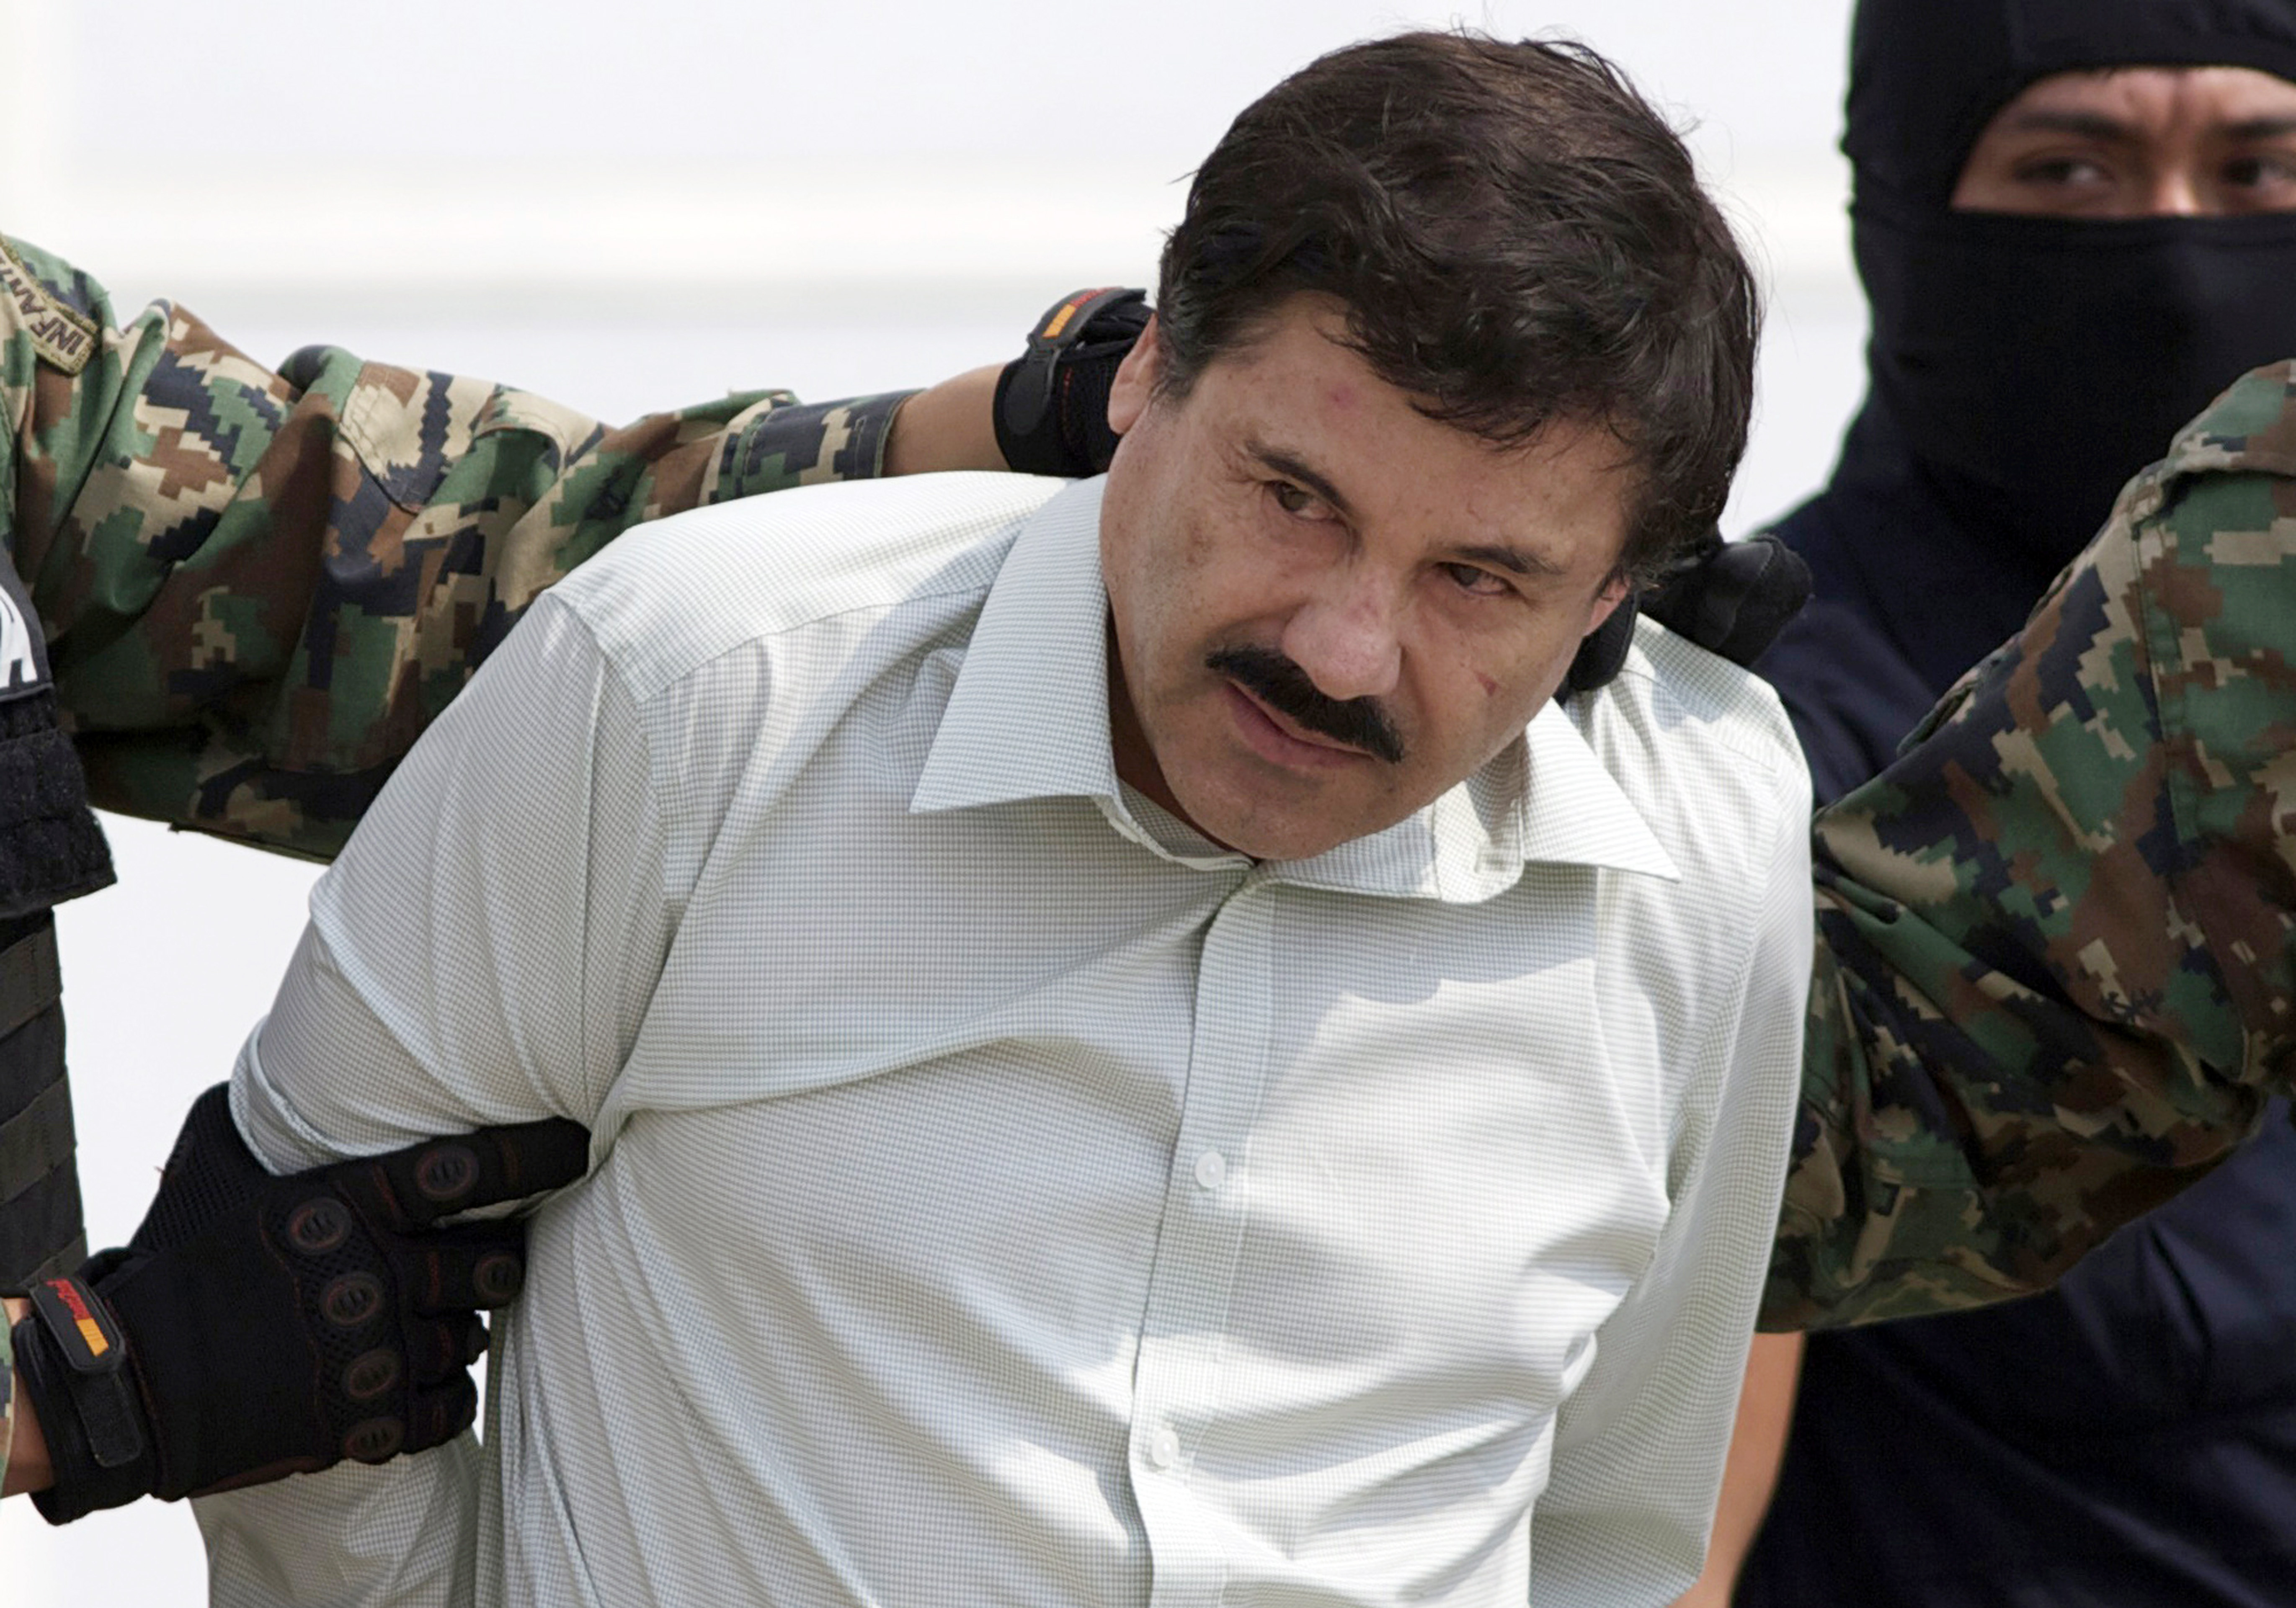 Un individuo cercano a "El Chapo" habría acudido con Veytia para entregarle sobornos millonarios 
(Foto: Eduardo Verdugo, Archivo)